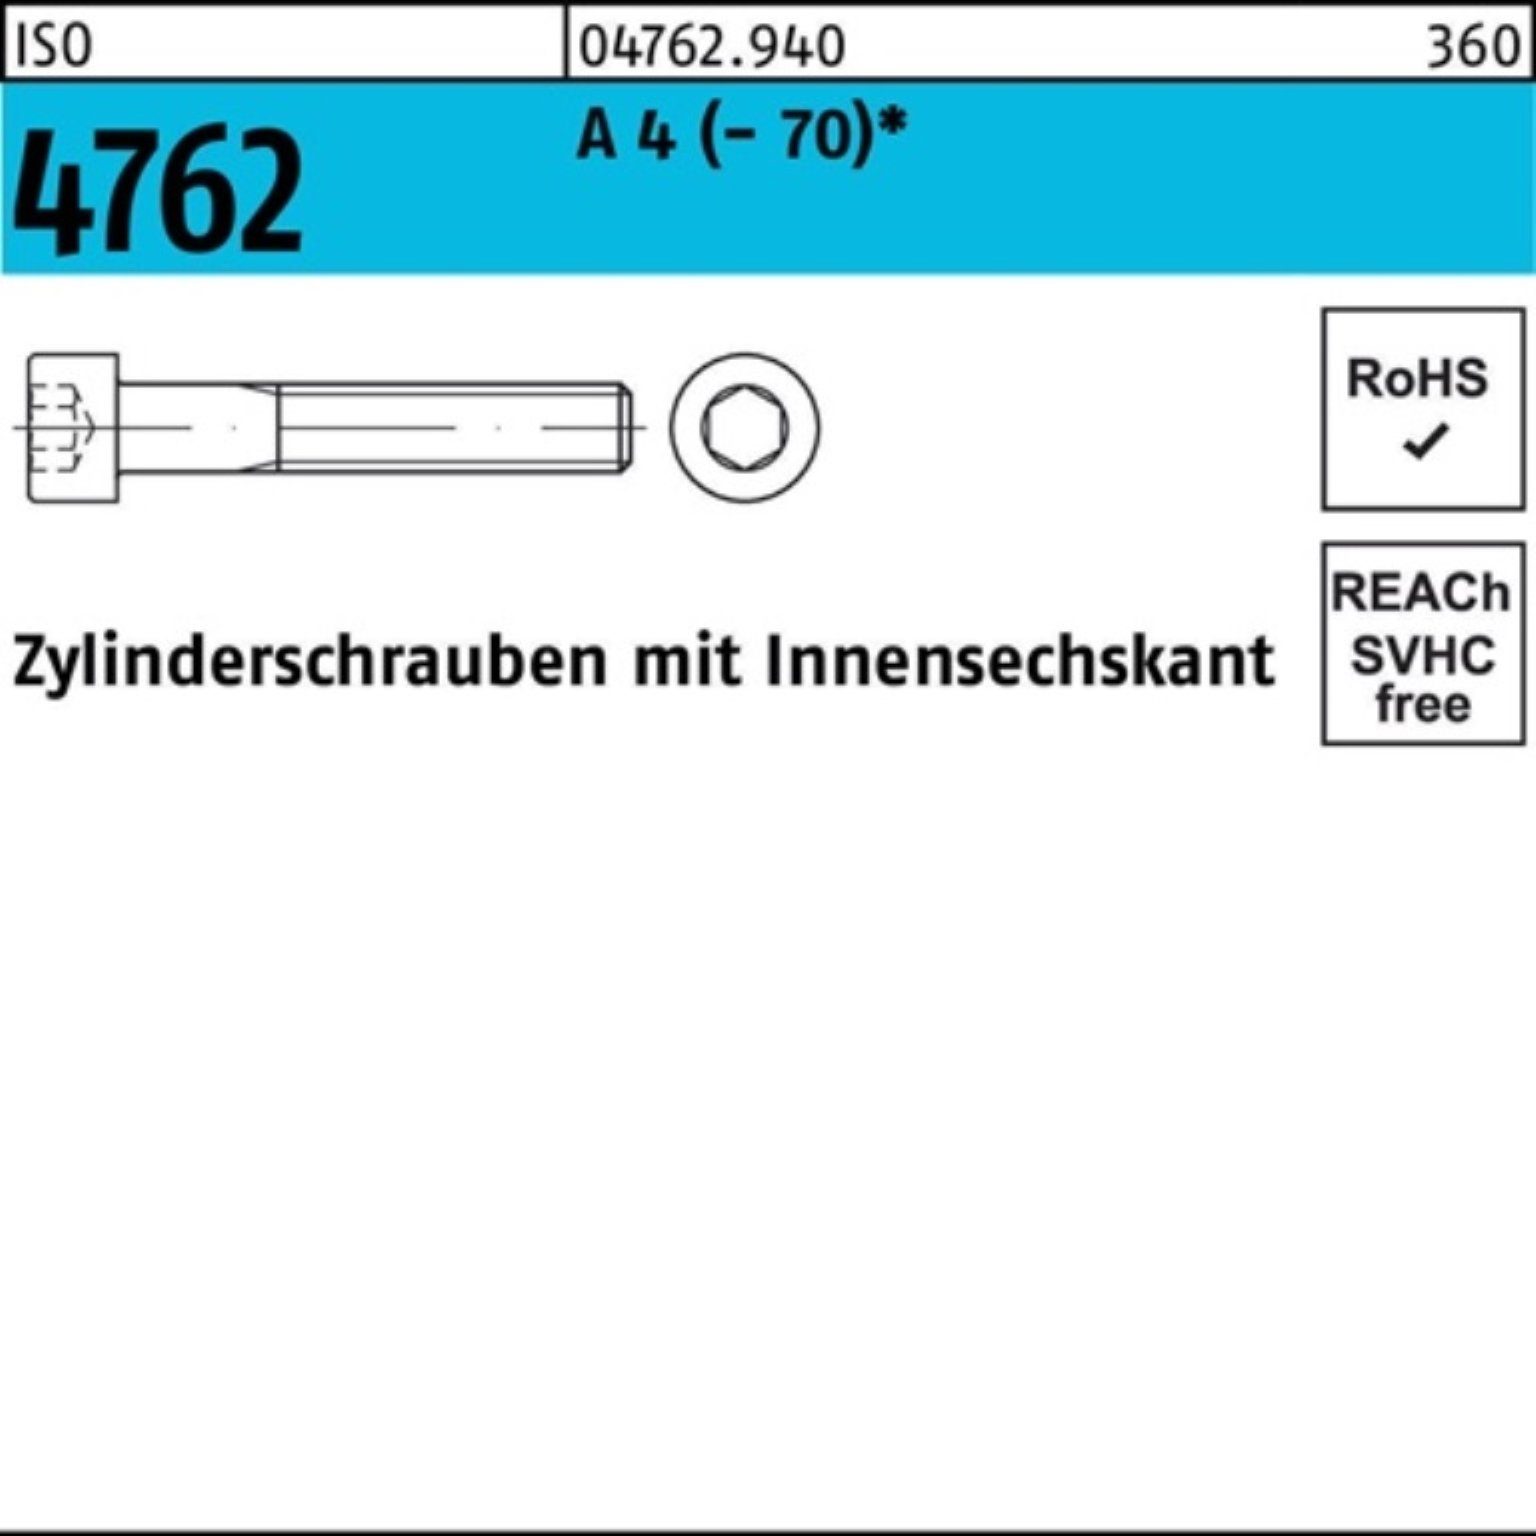 S 140 Zylinderschraube Reyher 1 Zylinderschraube A ISO Pack Innen-6kt 100er (70) 4762 4 M10x